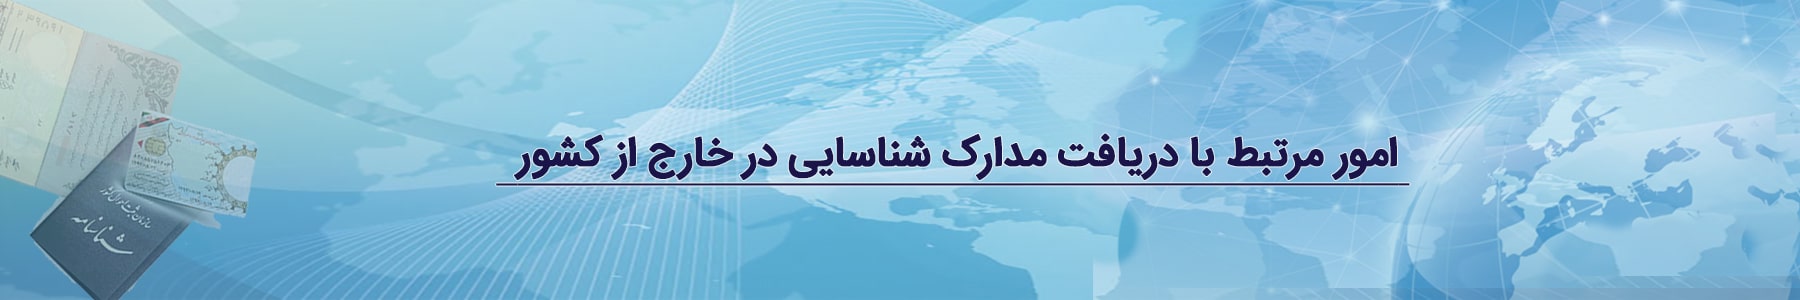 گواهینامه های ایرانیان خارج از کشور